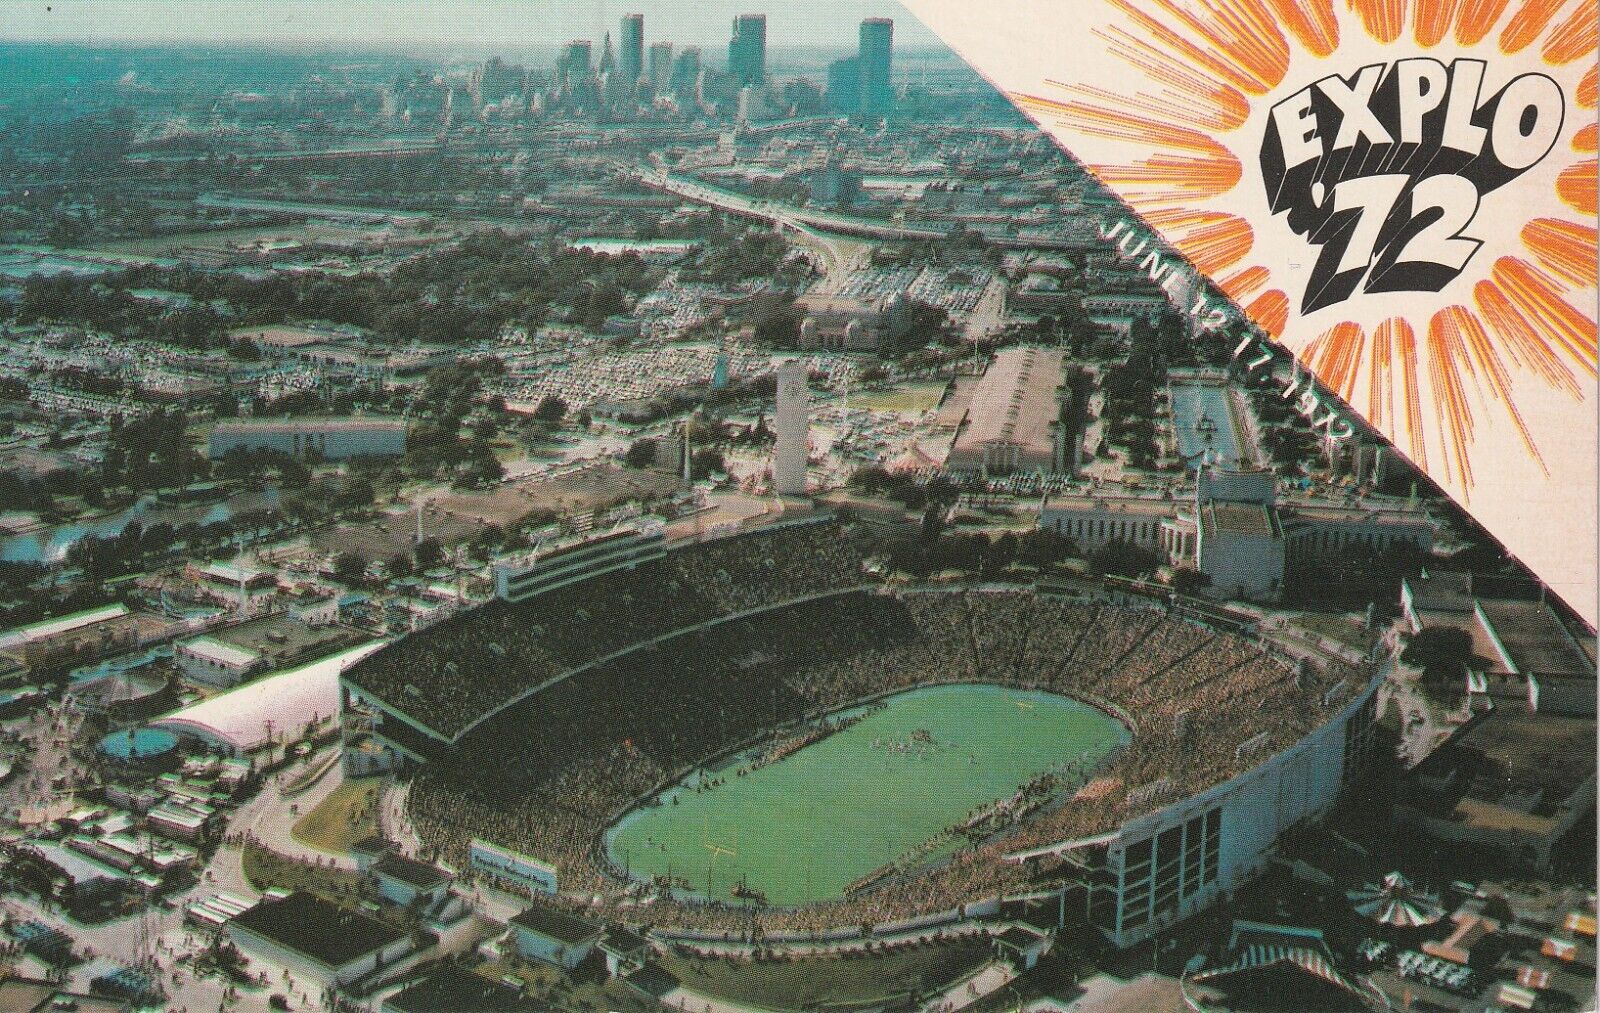 Tough to Find Dallas Texas Cotton Bowl Football Stadium Postcard - Explo '72